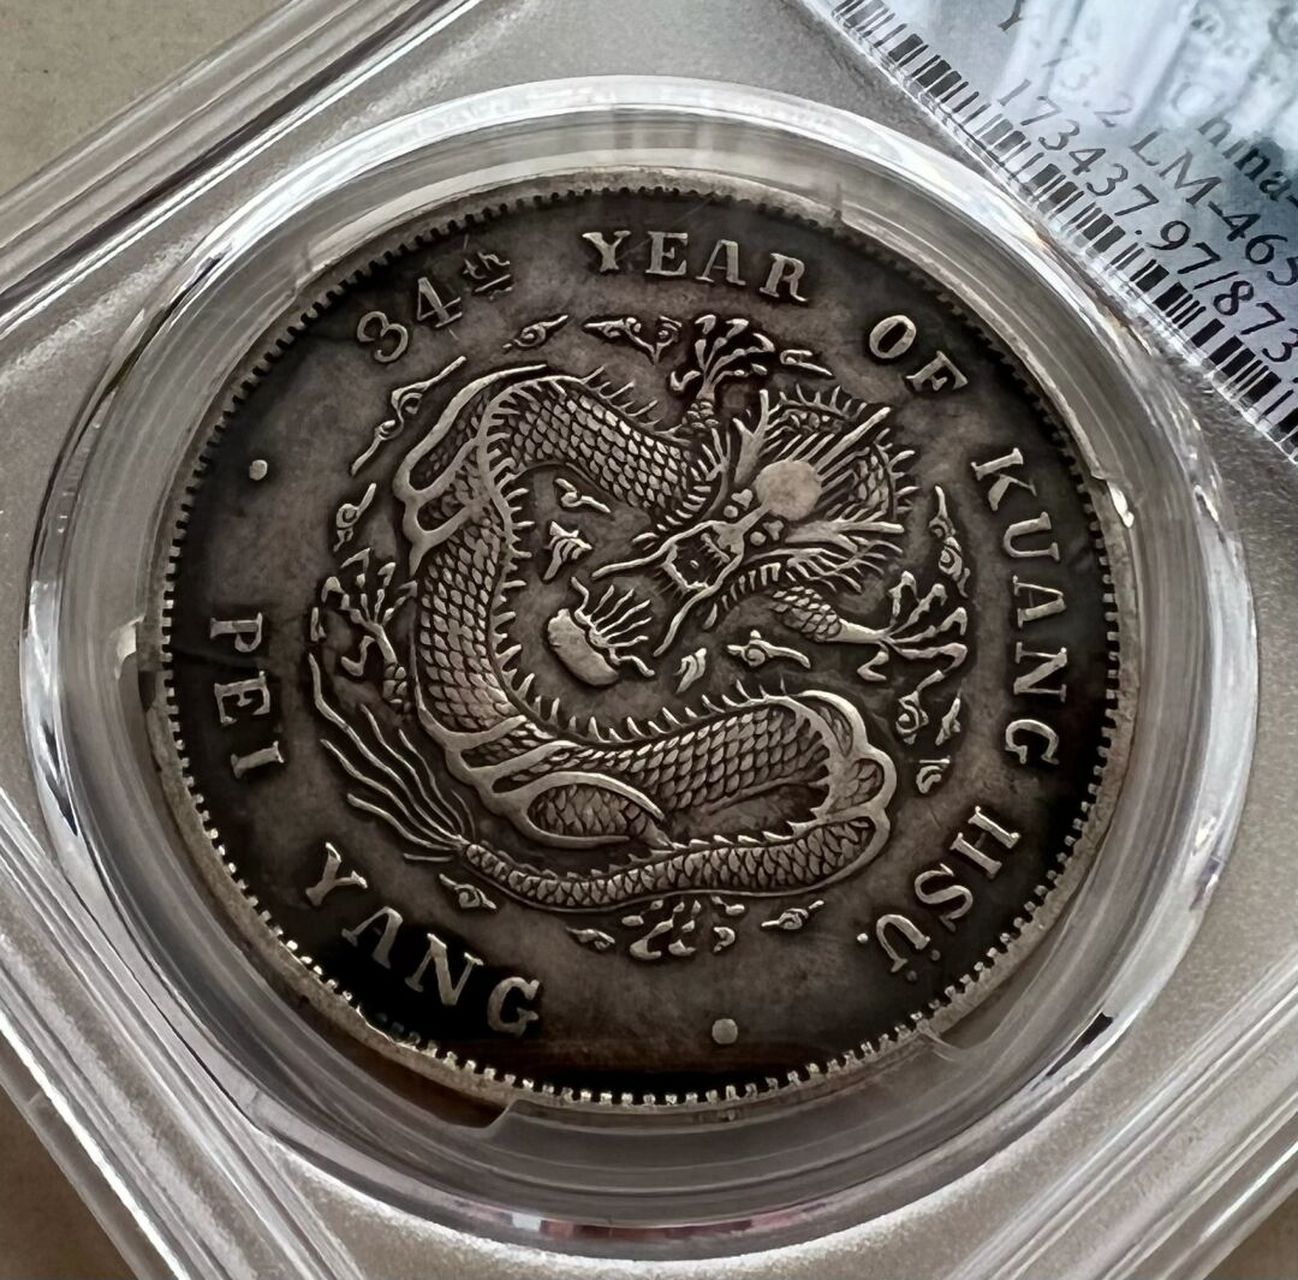 北洋34年银币价格表图片